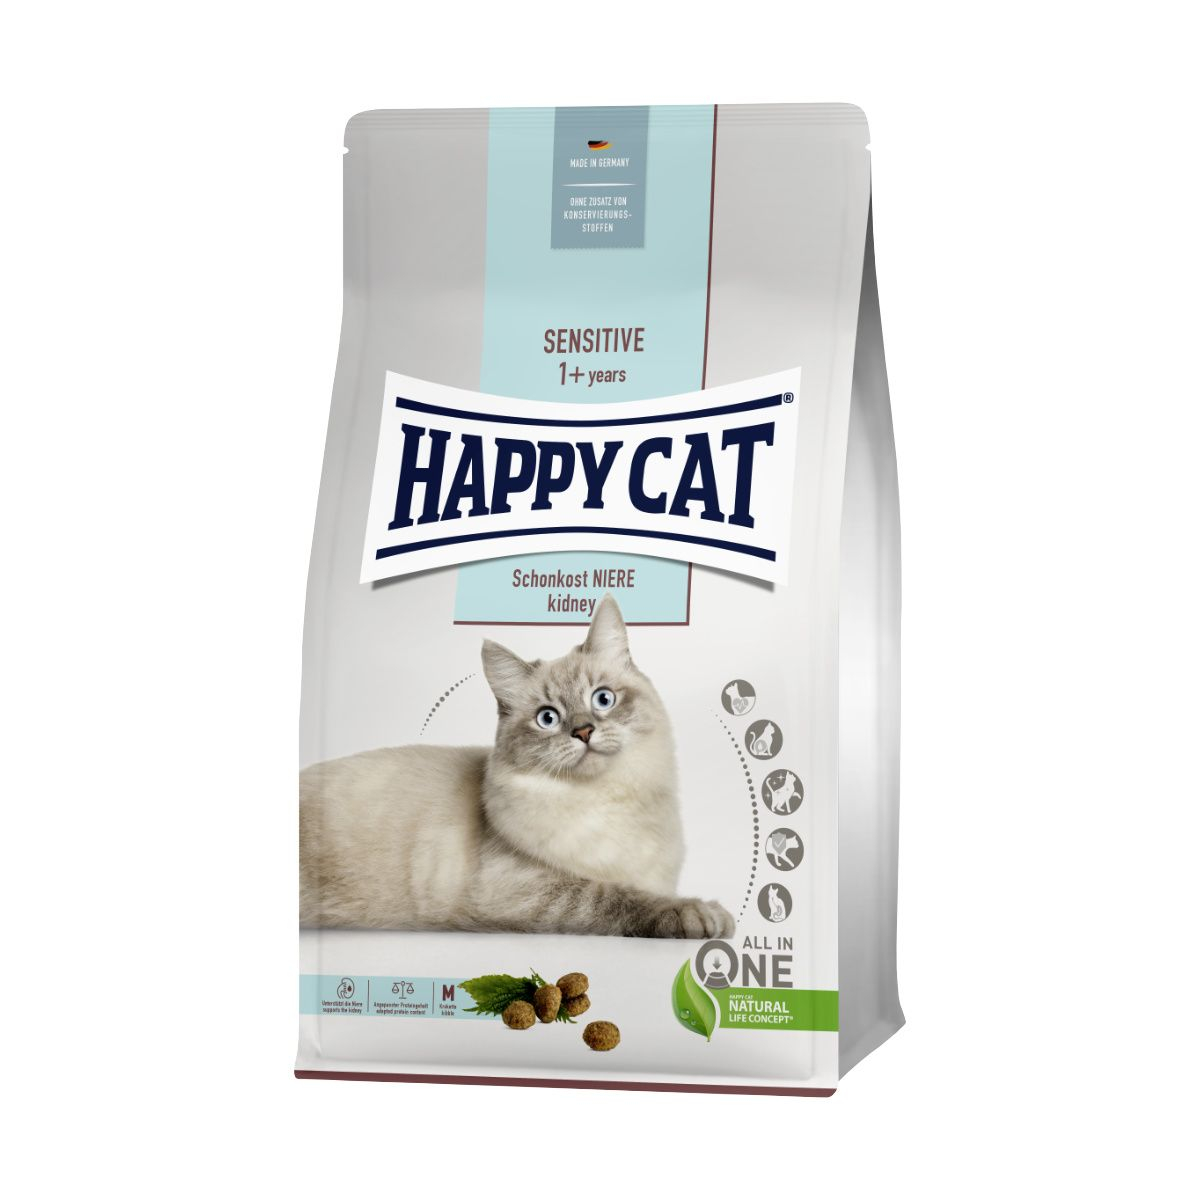 Happy Cat Sensitive Schonkost Niere / Vese 1,3 kg